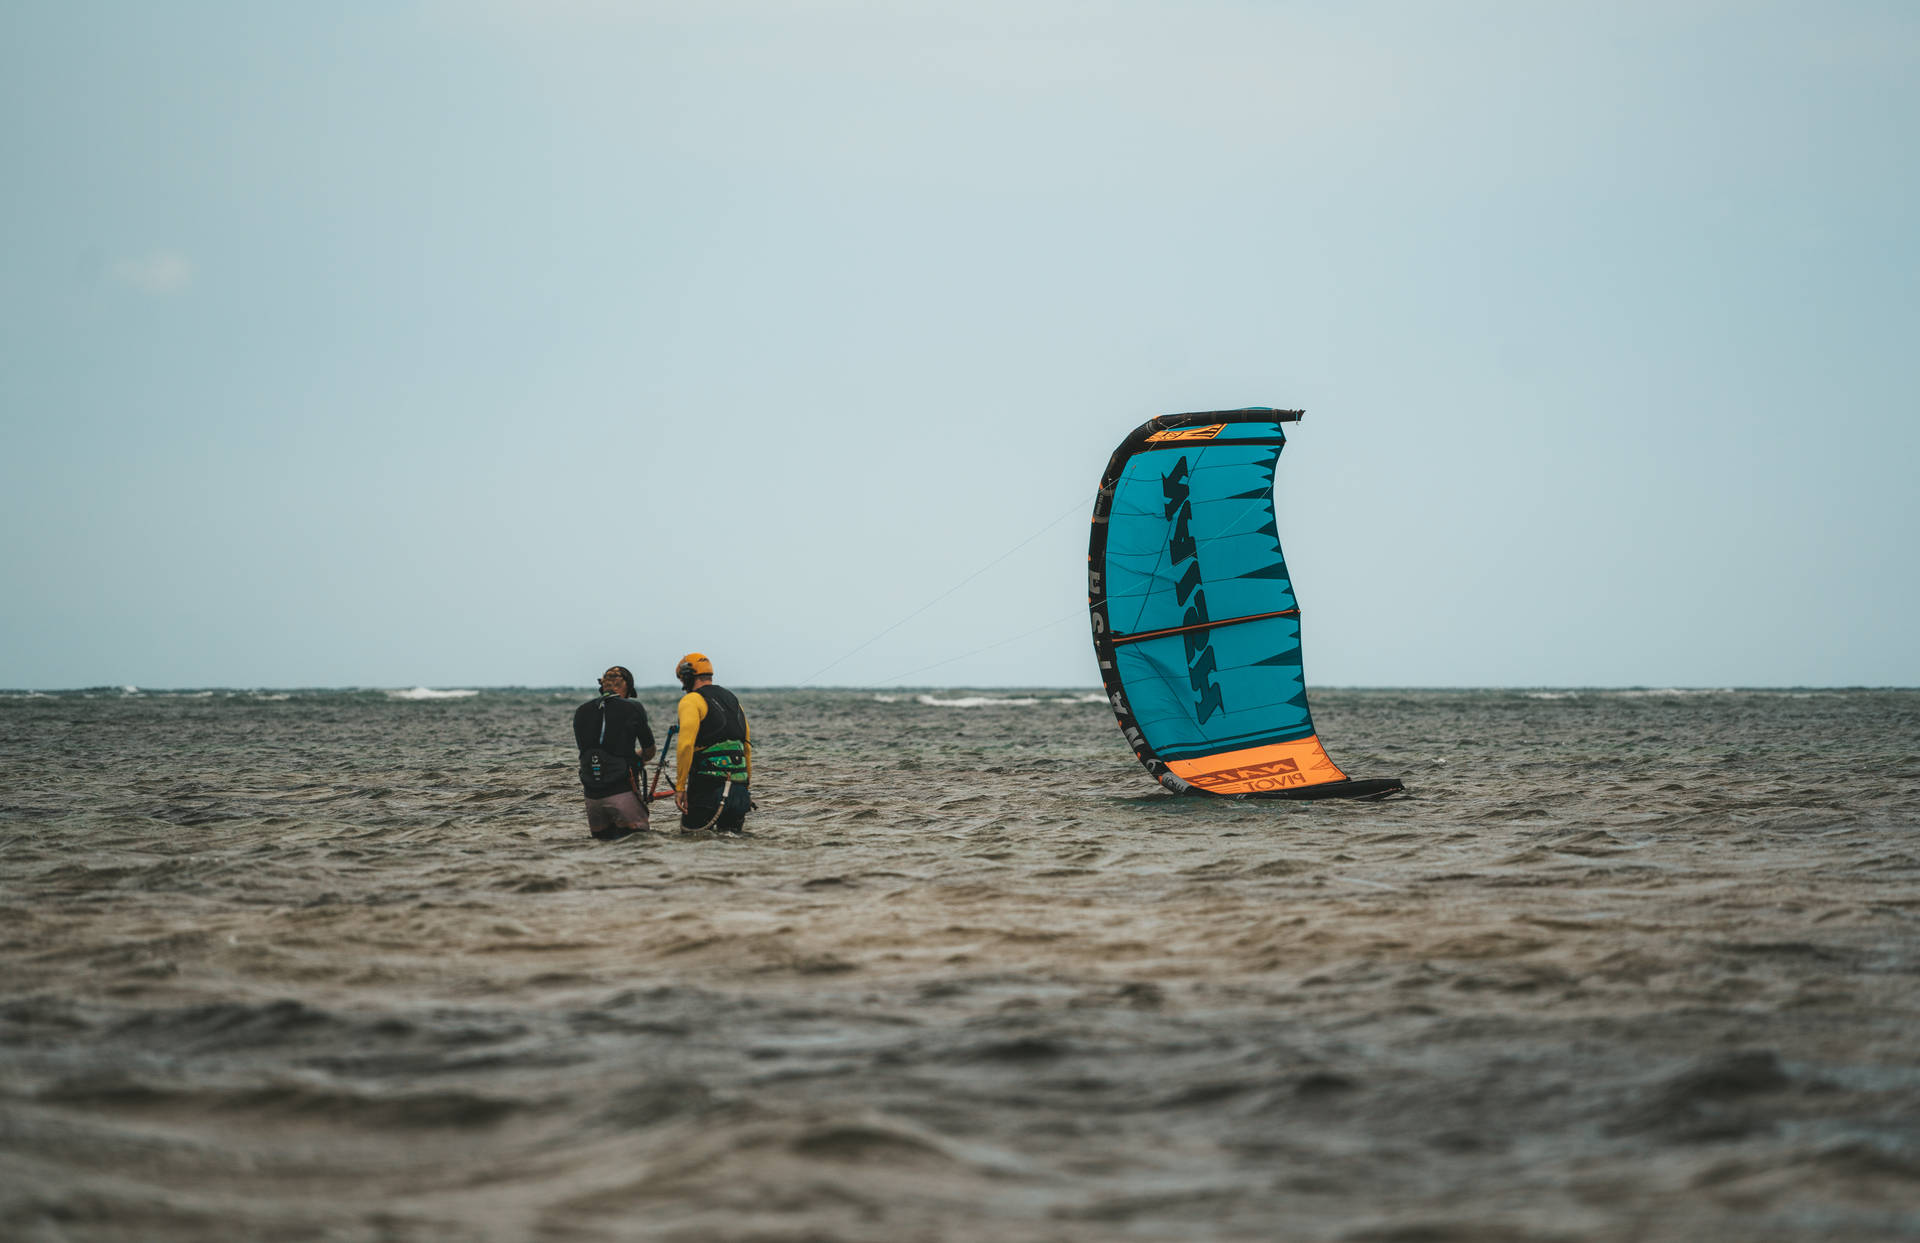 Fallen Windsurfing Sail